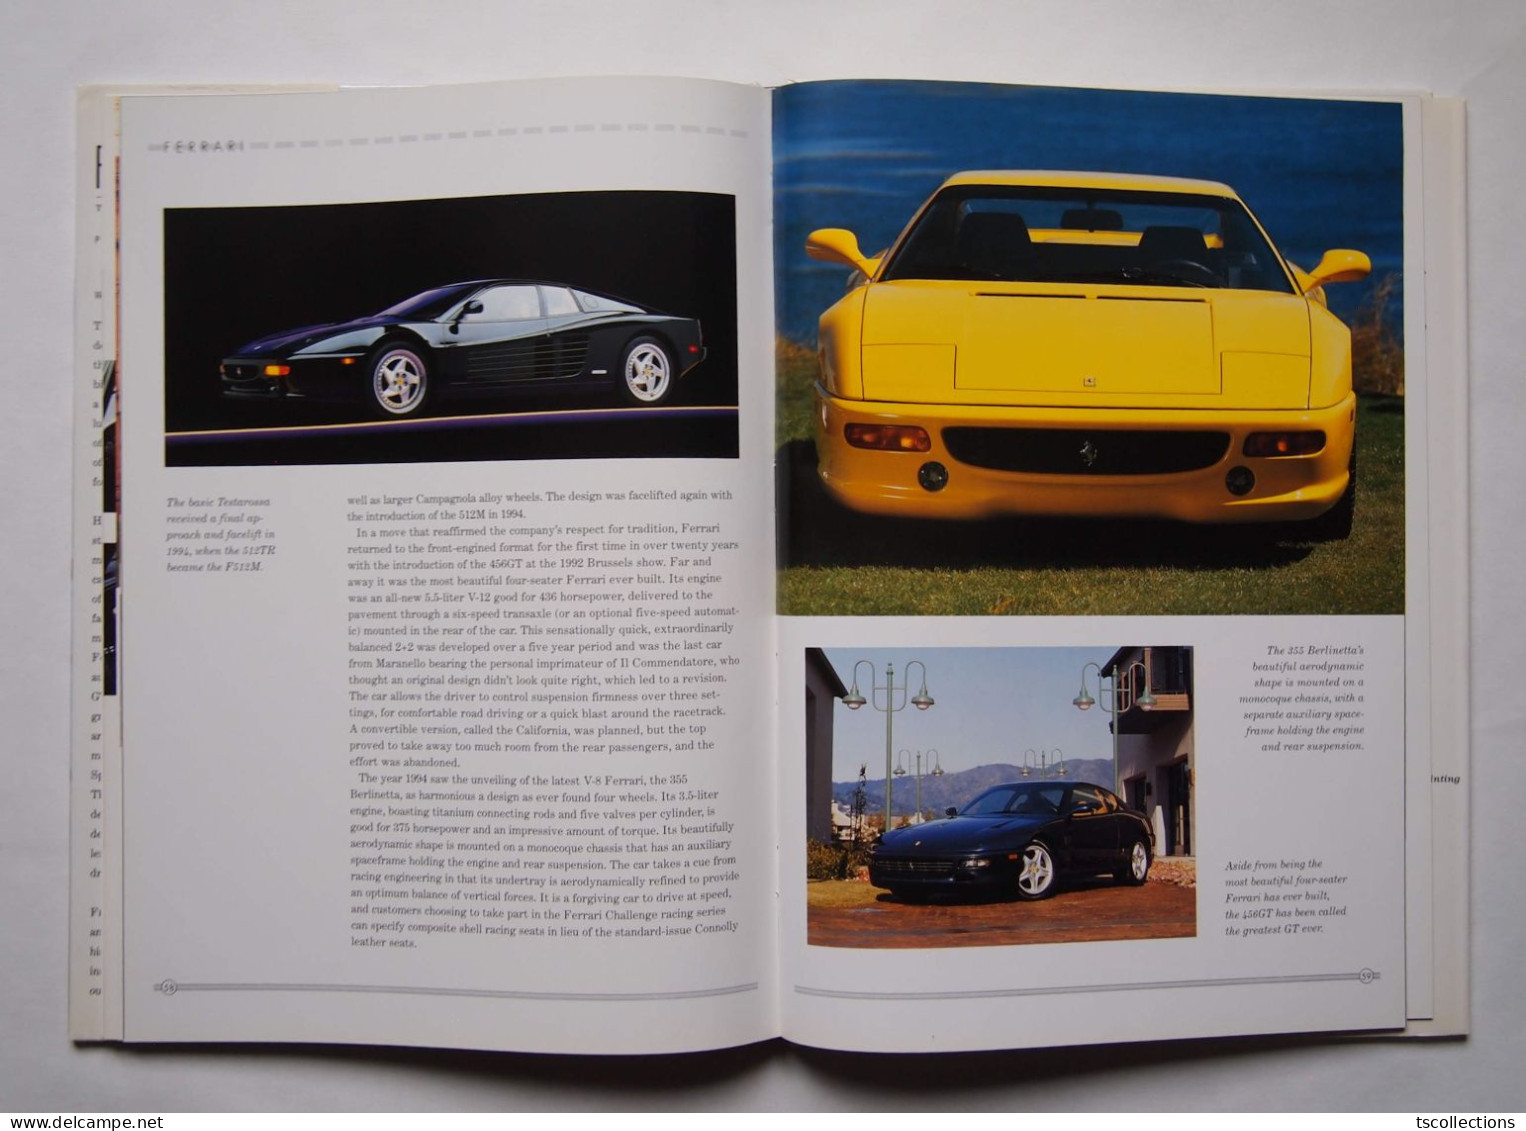 Ferrari The Ultimate Dream Machine - Libri Sulle Collezioni